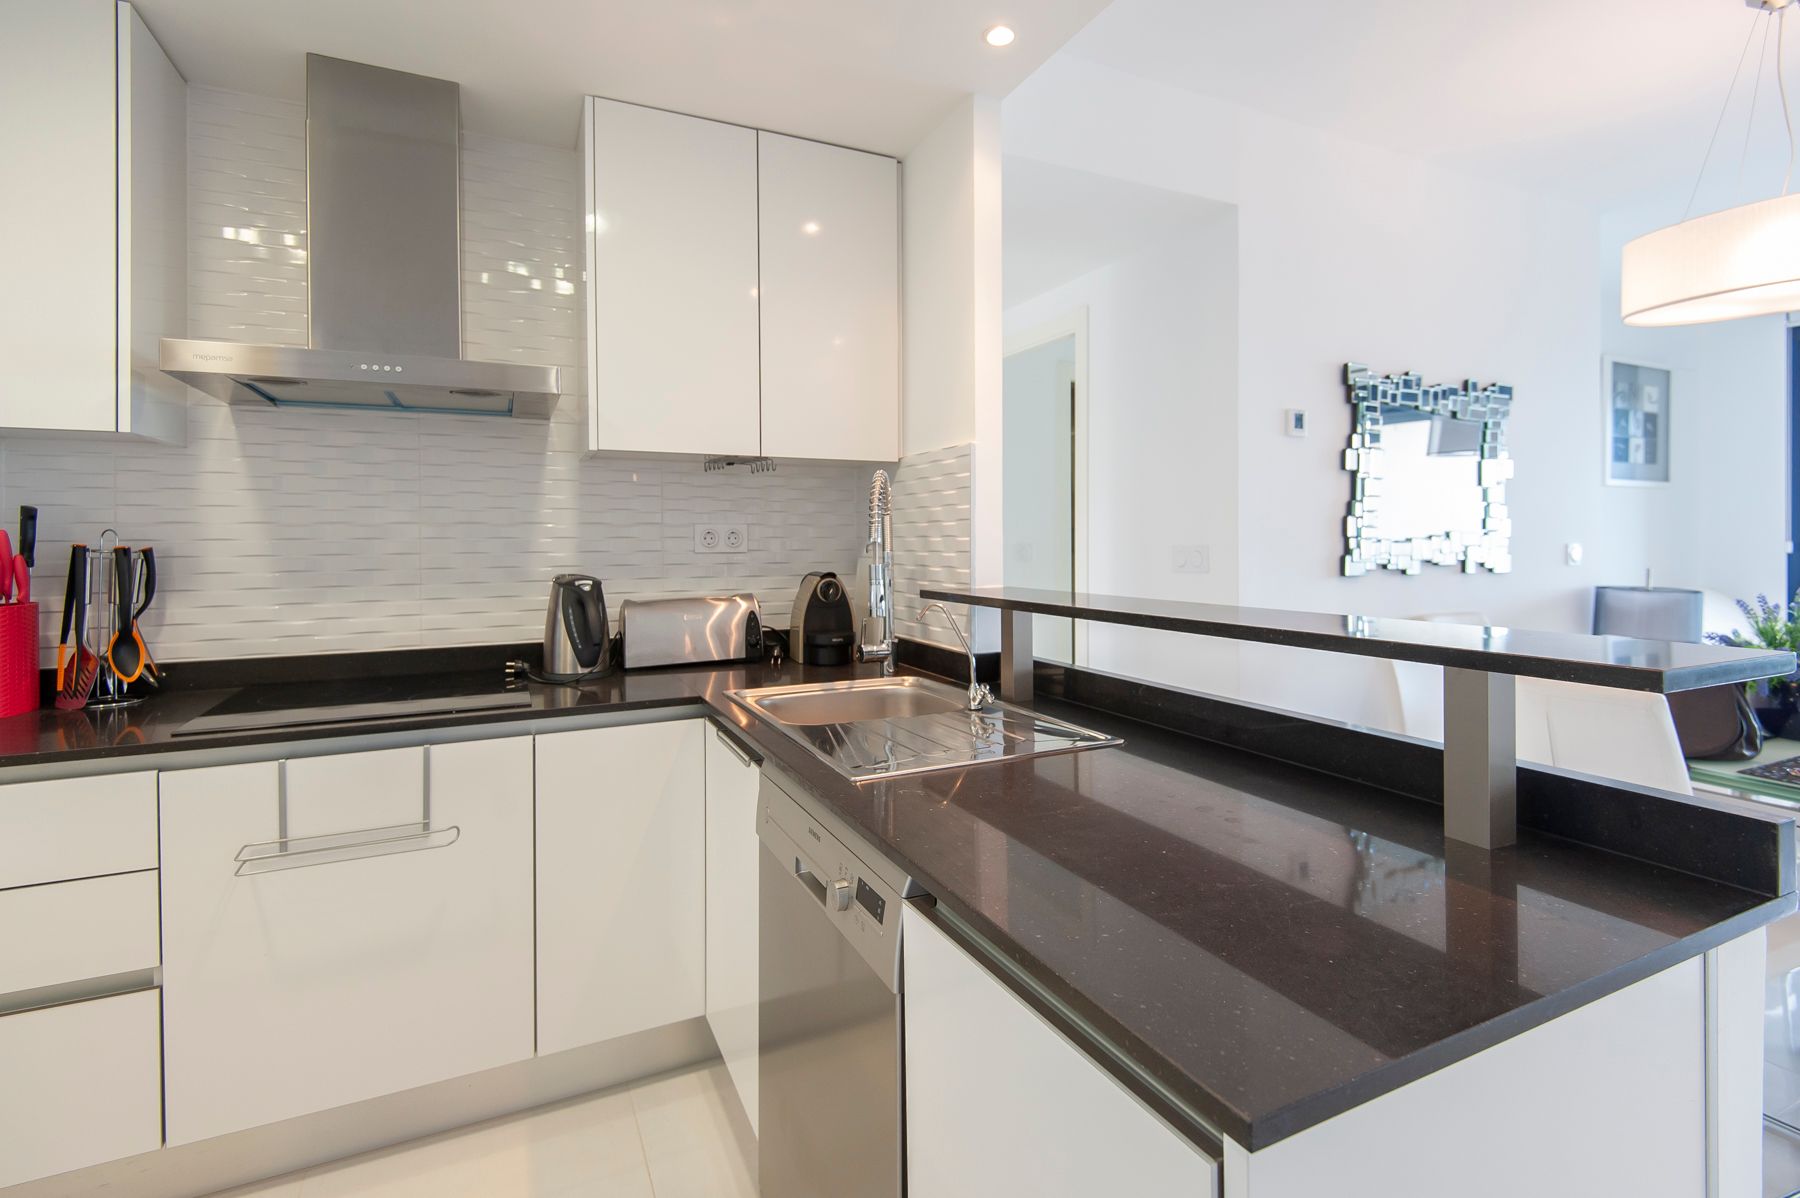 Et kjøkken med glatte hvite fronter og svart marmorlignende benkeplate